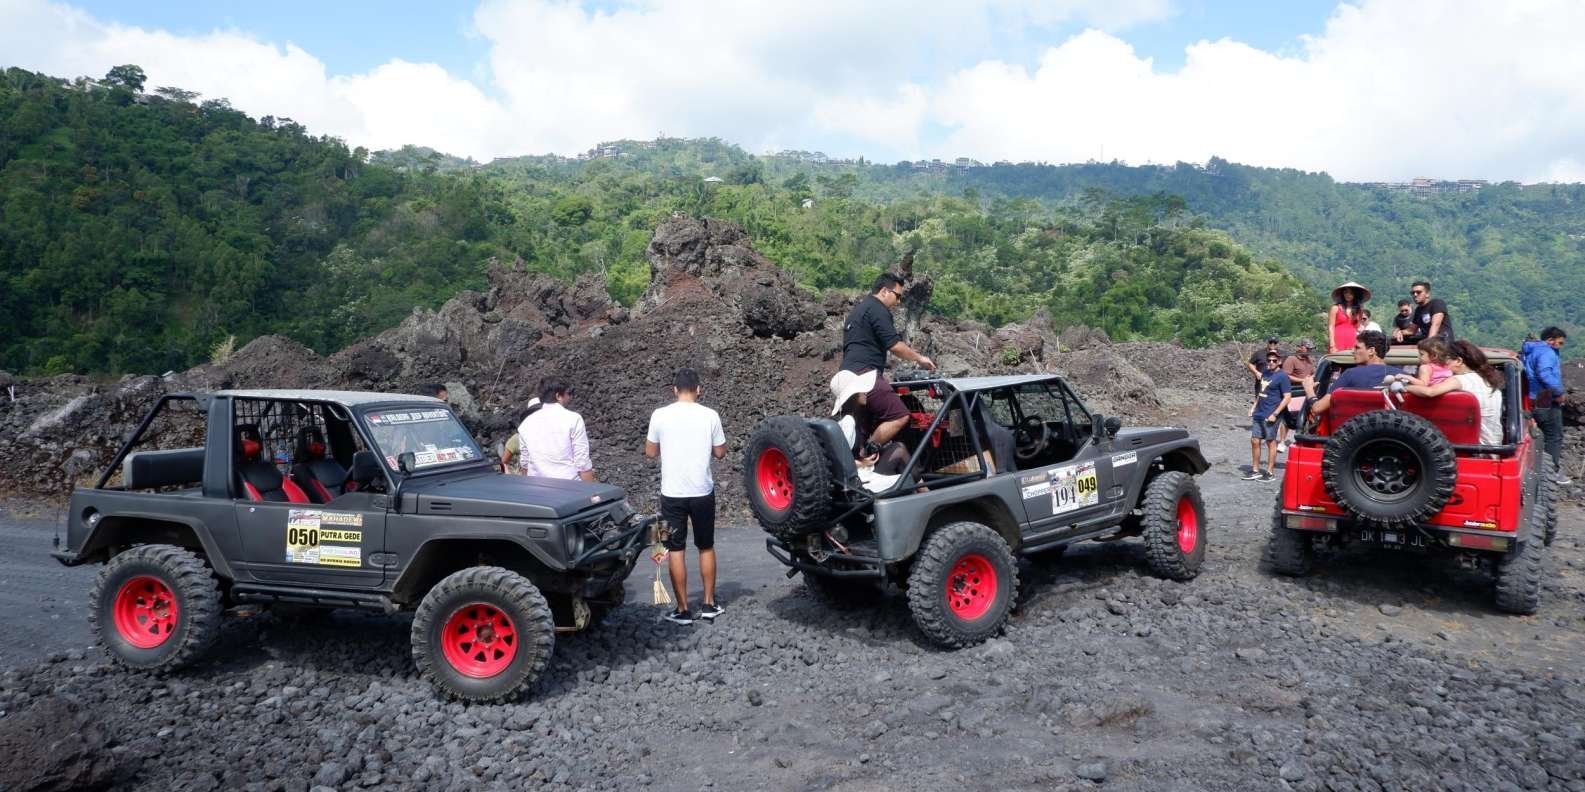 019-mt-batur-black-lava-jeep-tour-natural-hot-spring-3-t175089.jpg